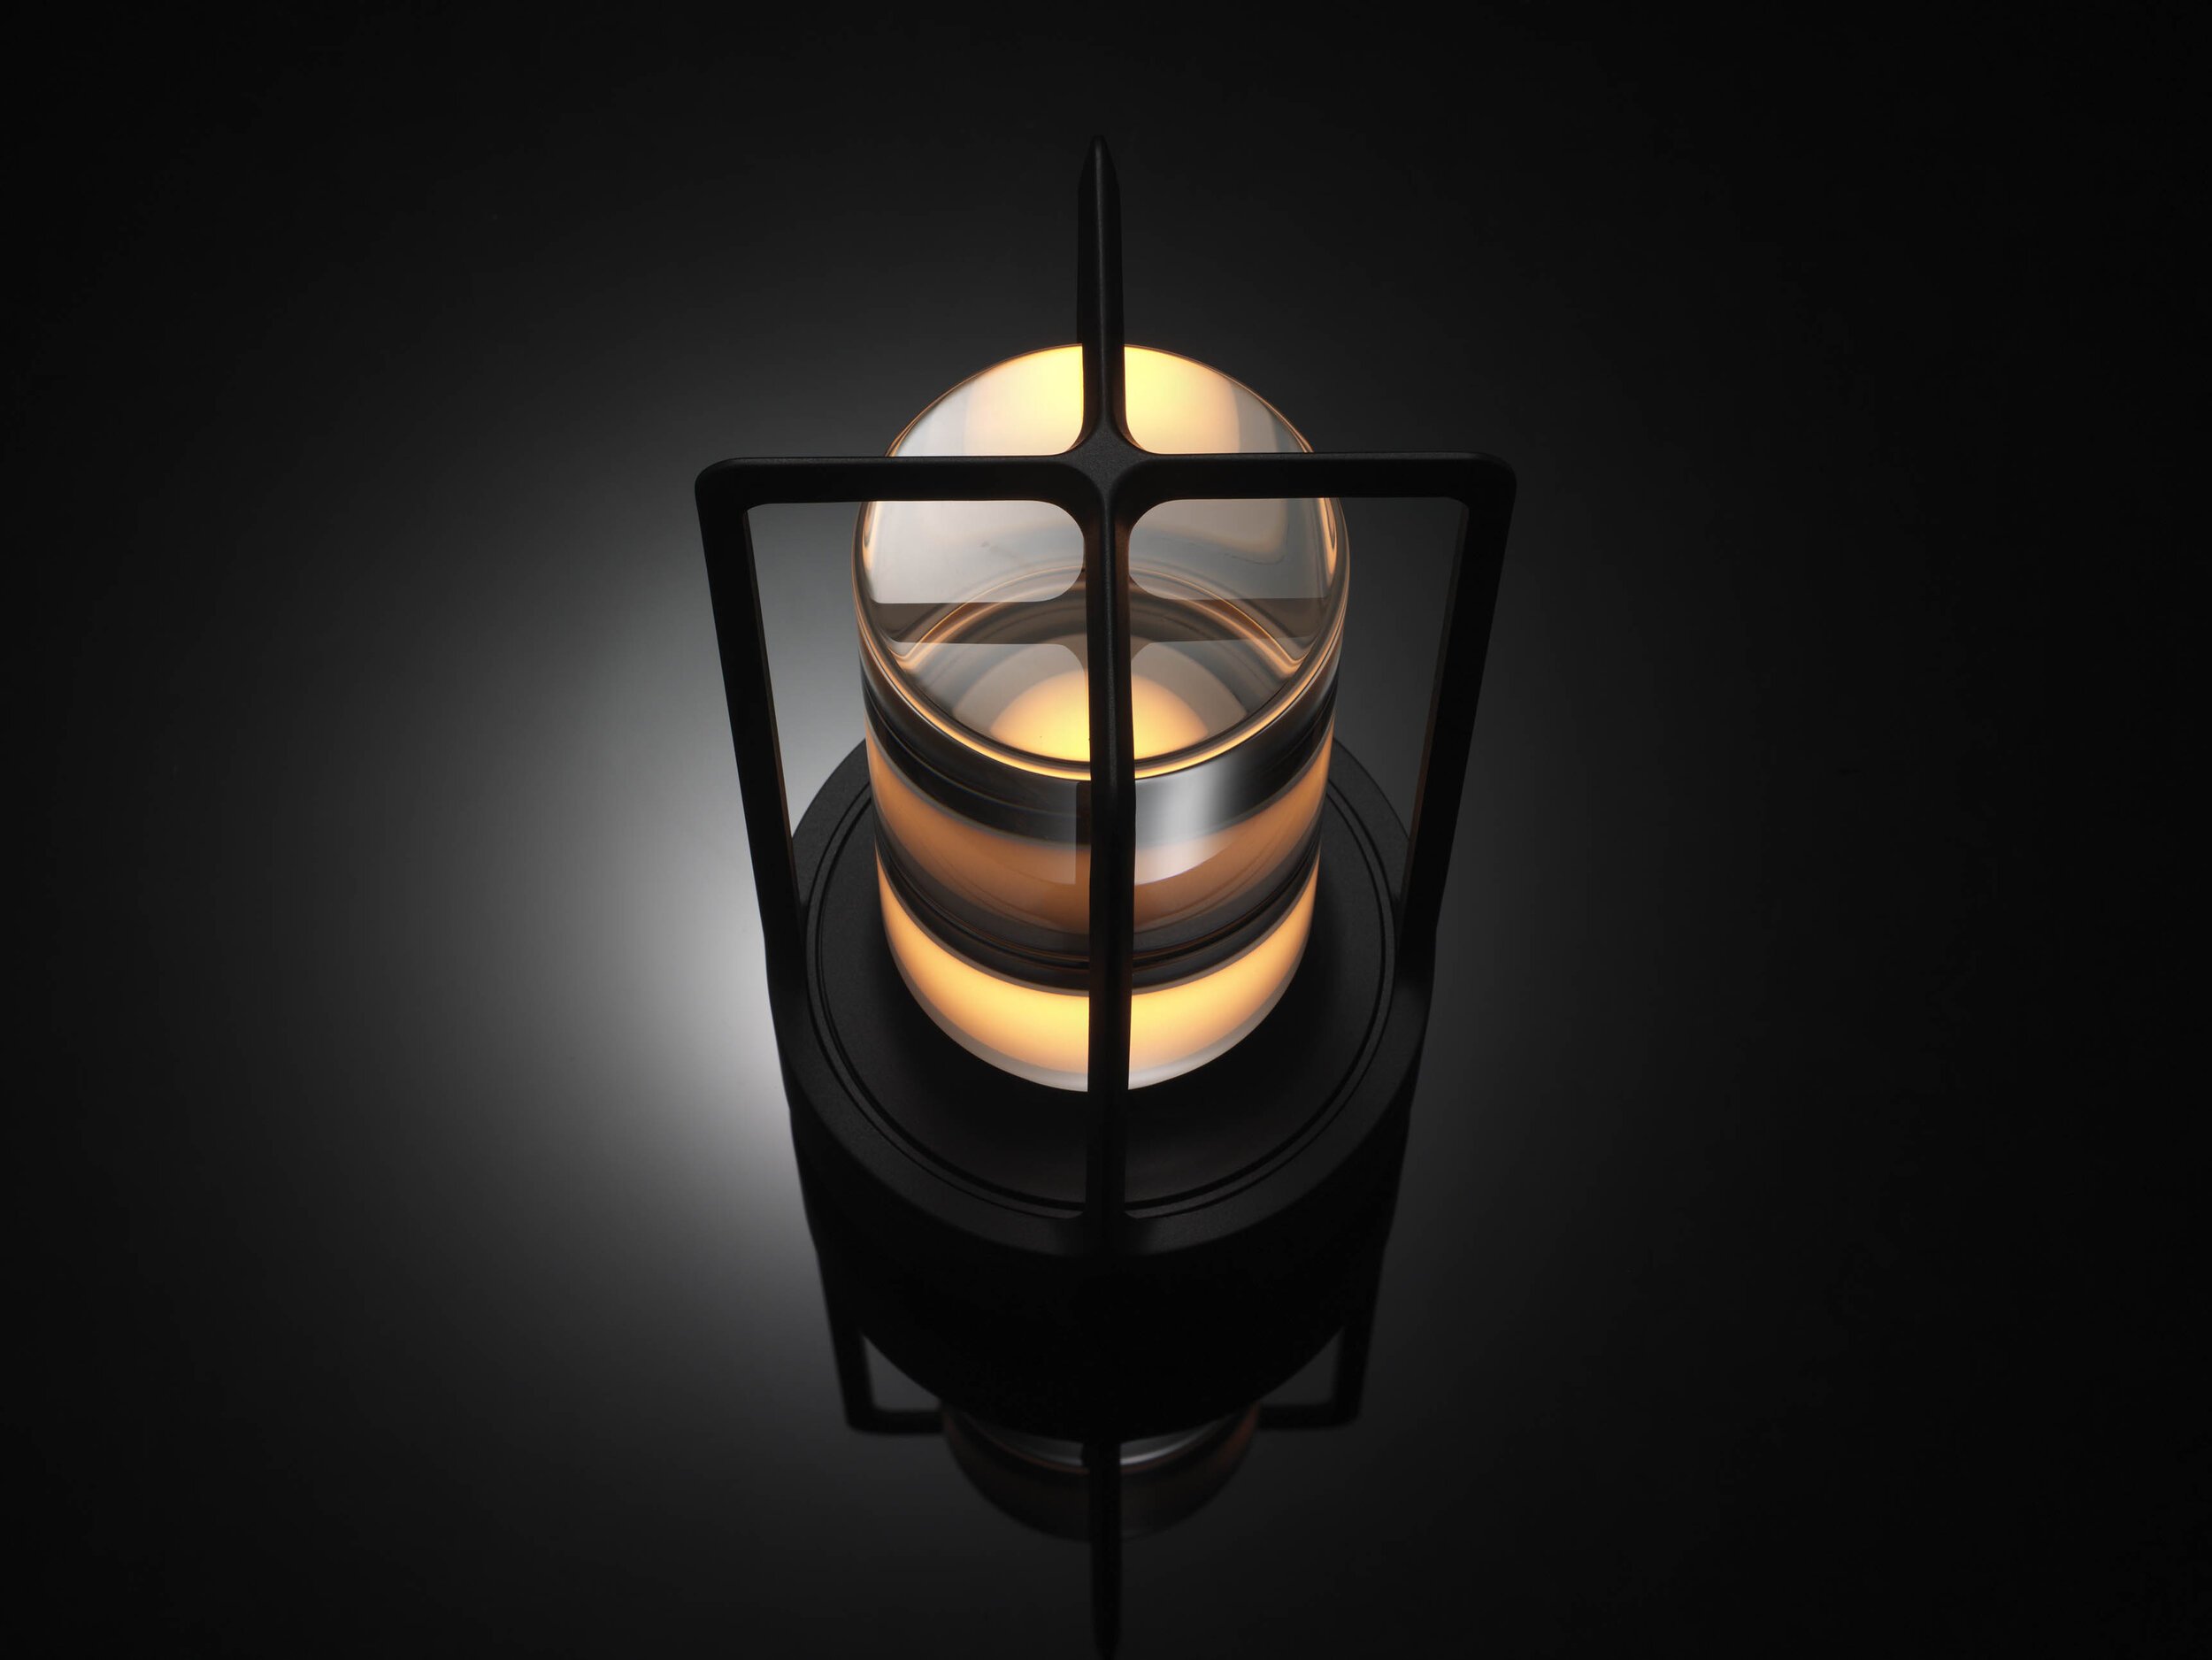  Nao Tamura 田村奈穂がデザインを手掛けた、アンビエンテックの照明器具「TURN+（ターンプラス）」のディテール 